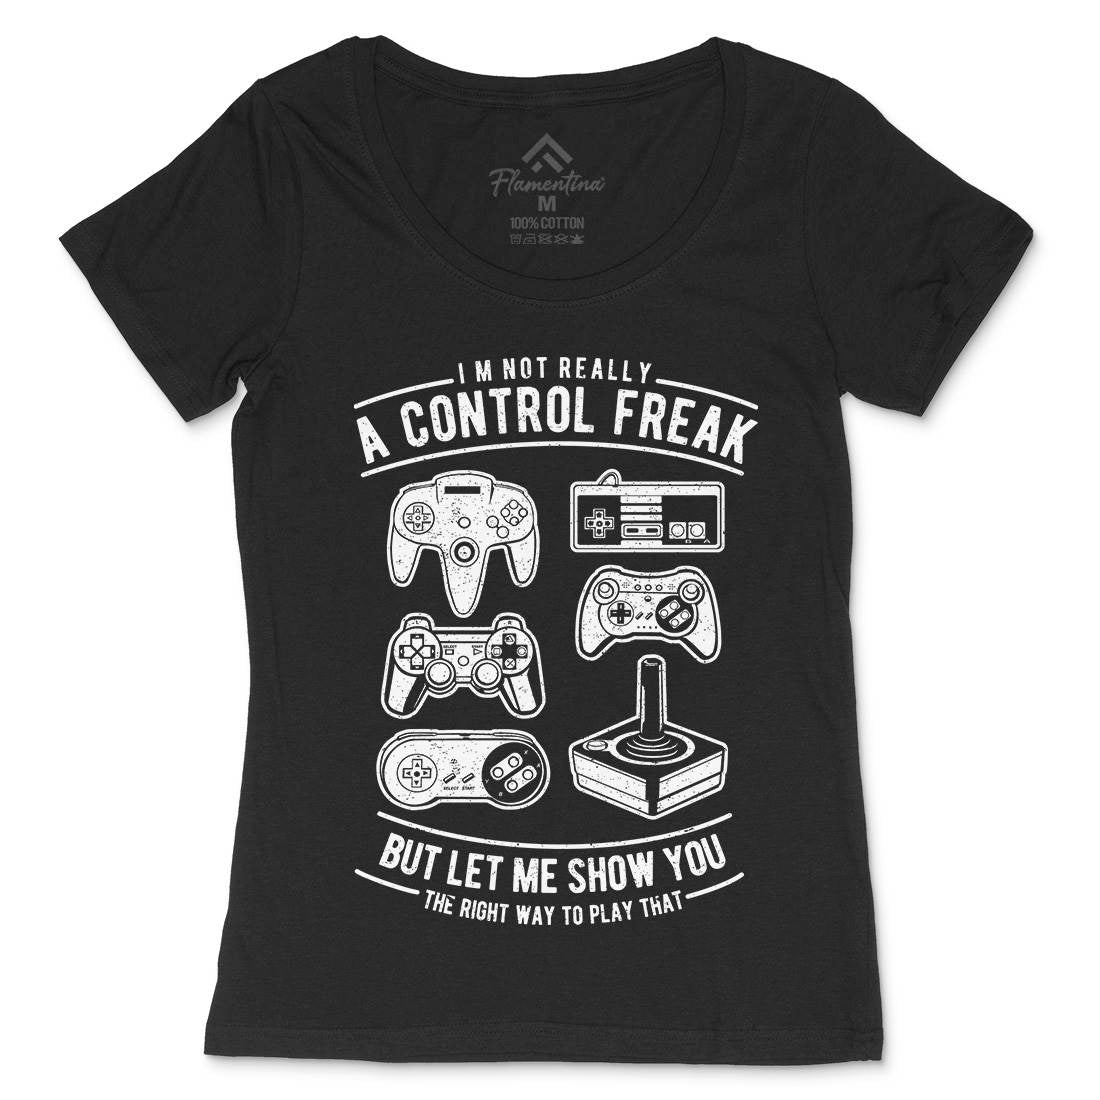 A Control Freak Womens Scoop Neck T-Shirt Geek A601